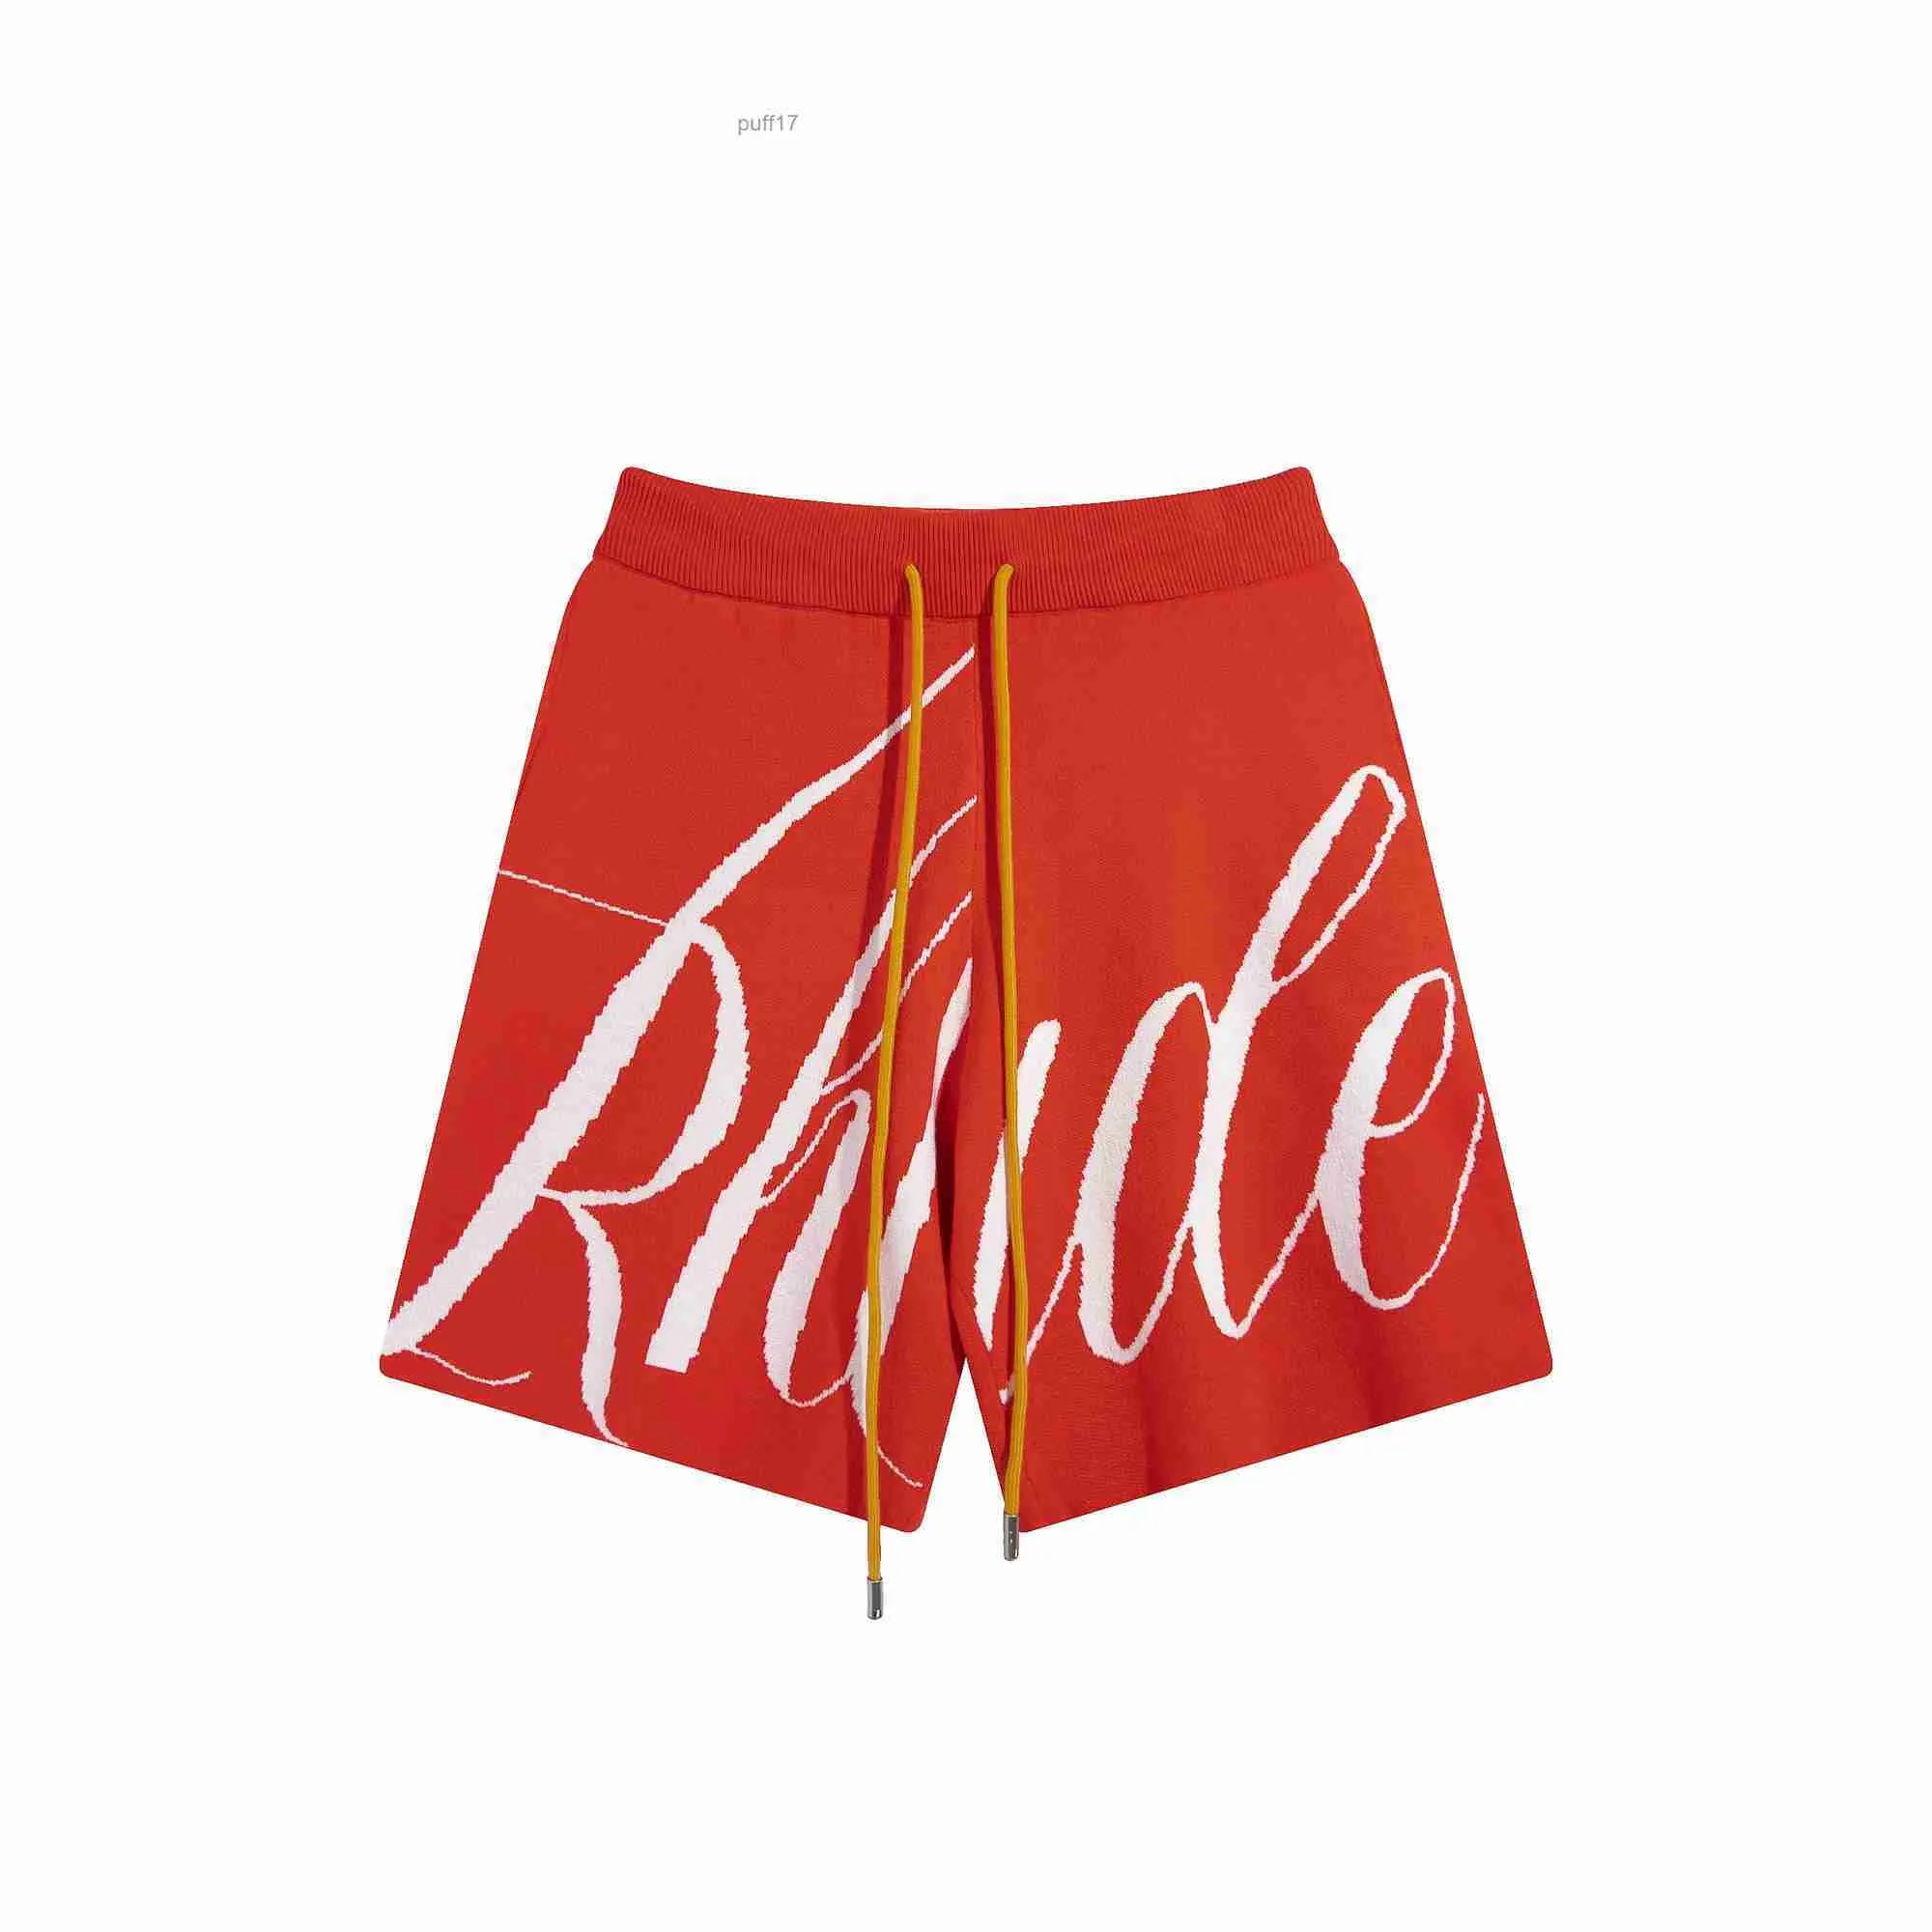 Designer rhude mens pantaloncini da pallacanestro da bagno per donne uomini unisex palestre allenati di asciugatura rapida estate shas show showpants elenchi 0d55 0d55